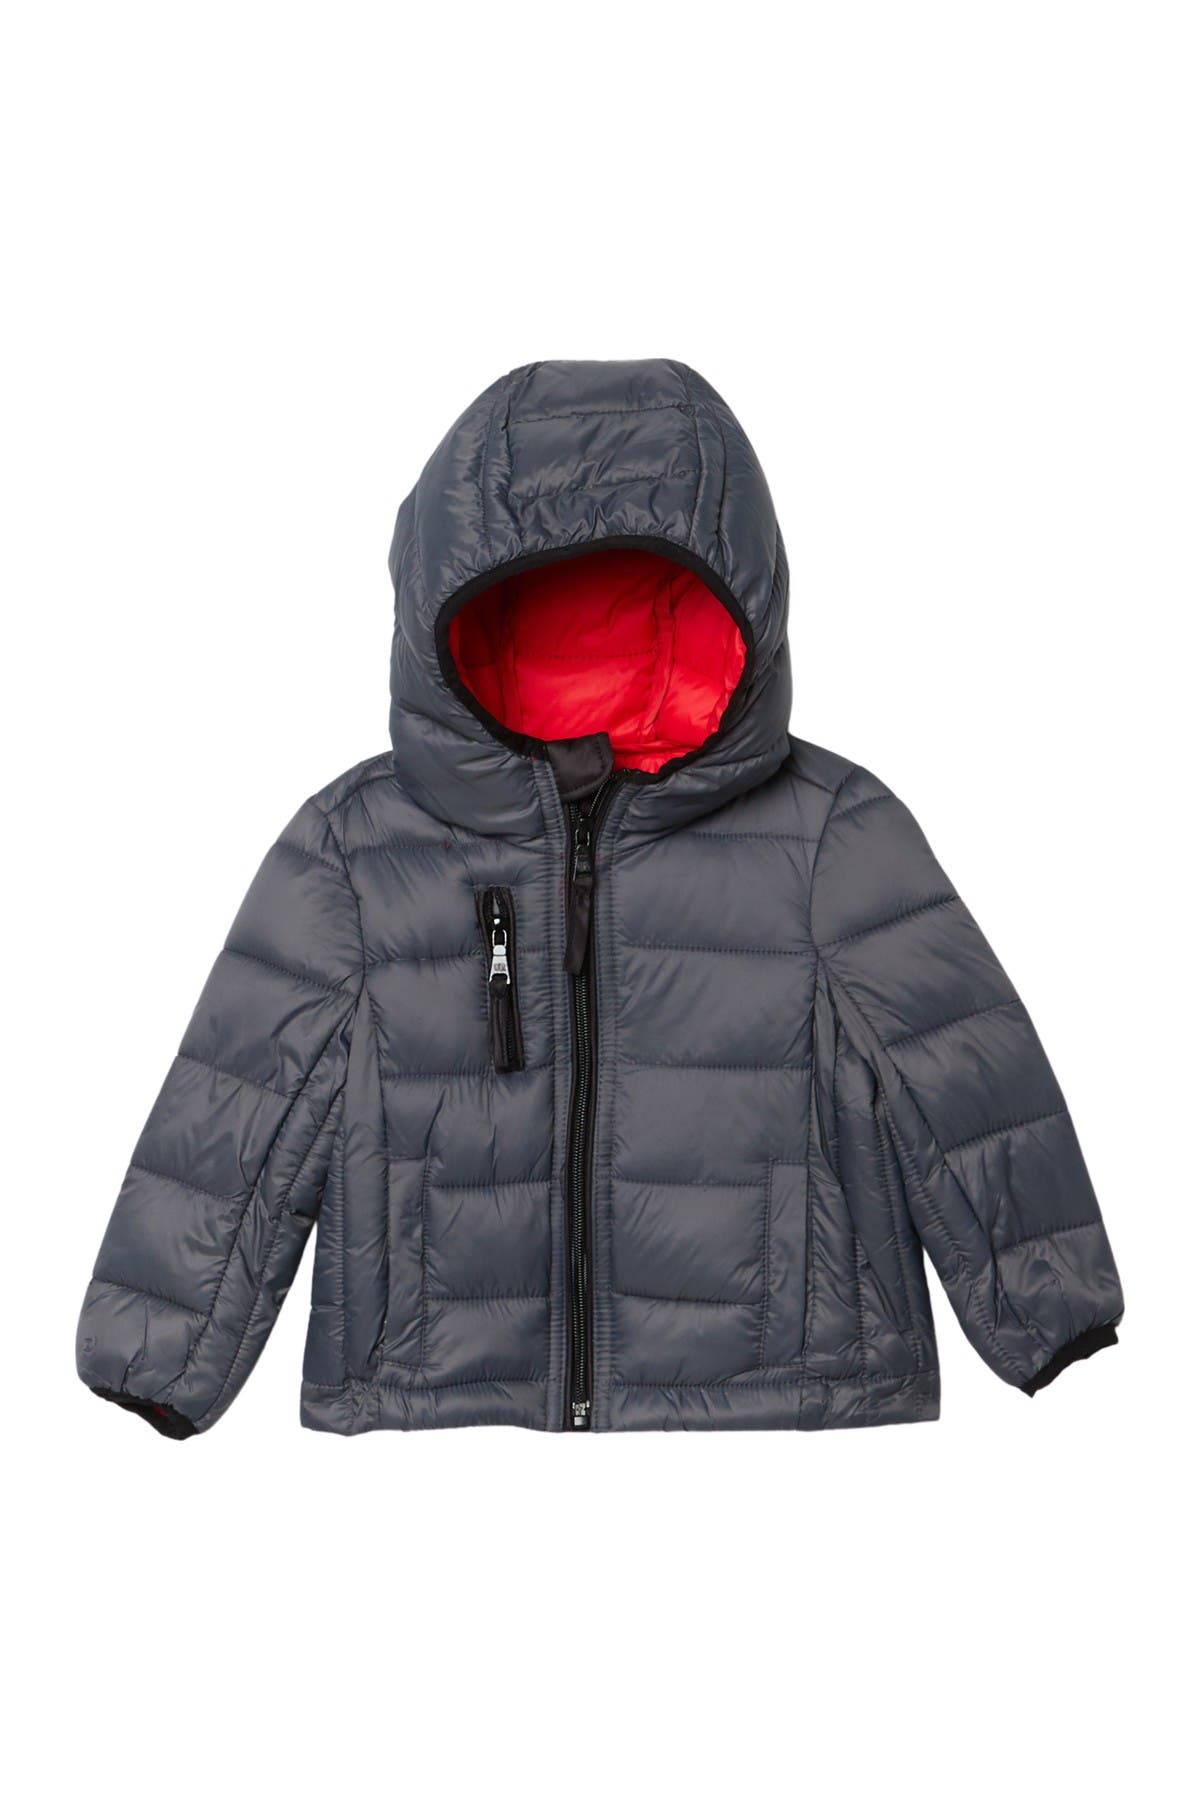 michael kors kidswear jacket